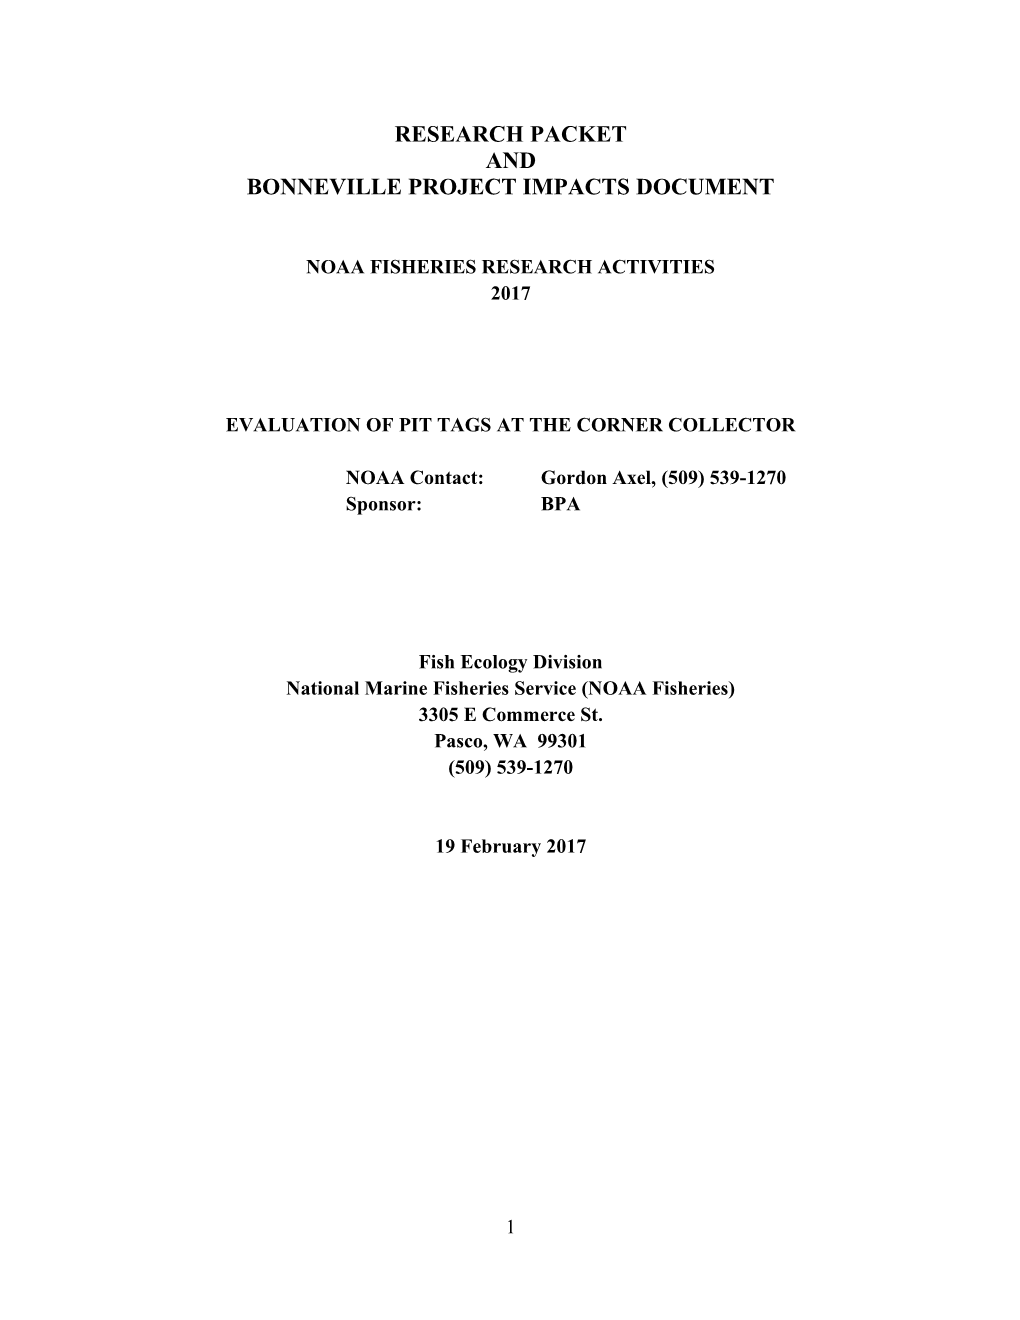 Bonneville Project Impacts Document